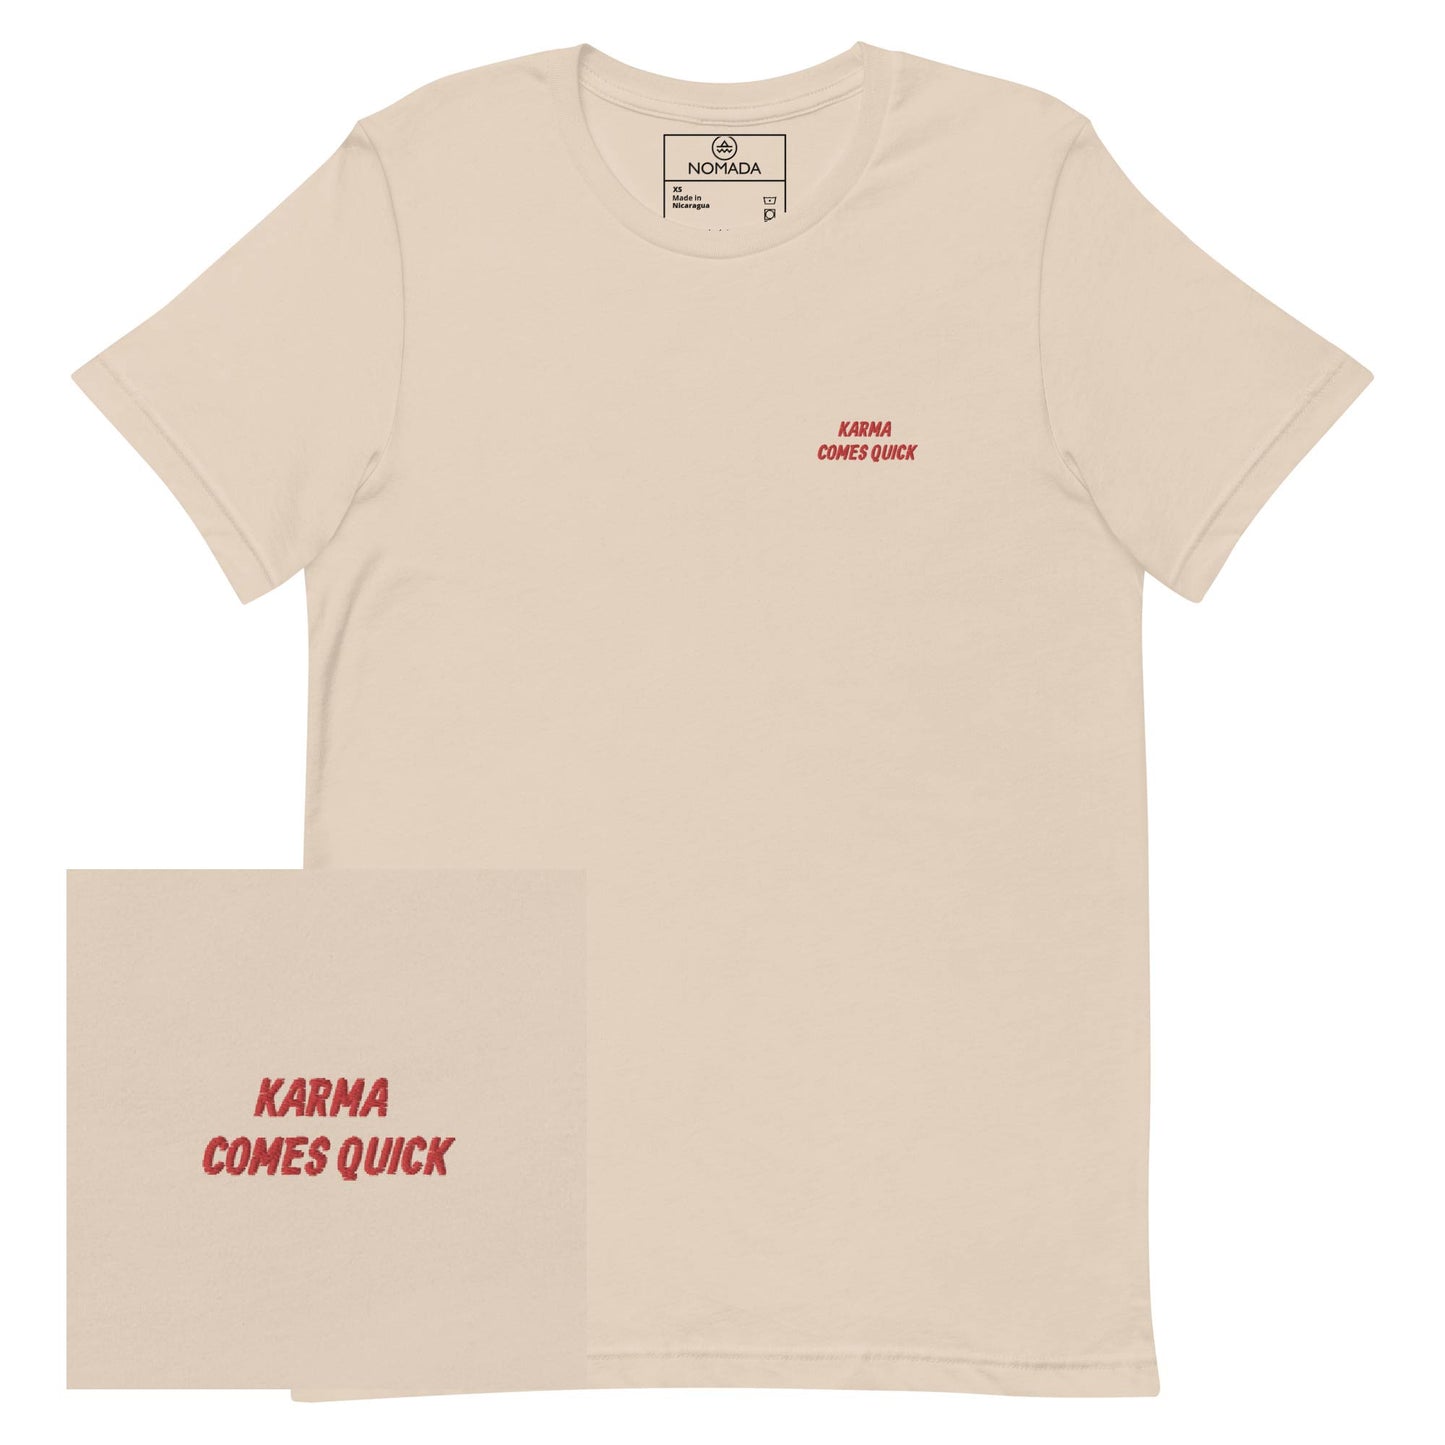 NOMADA Karma Comes Quick embroidered t-shirt, Soft cream color shirt